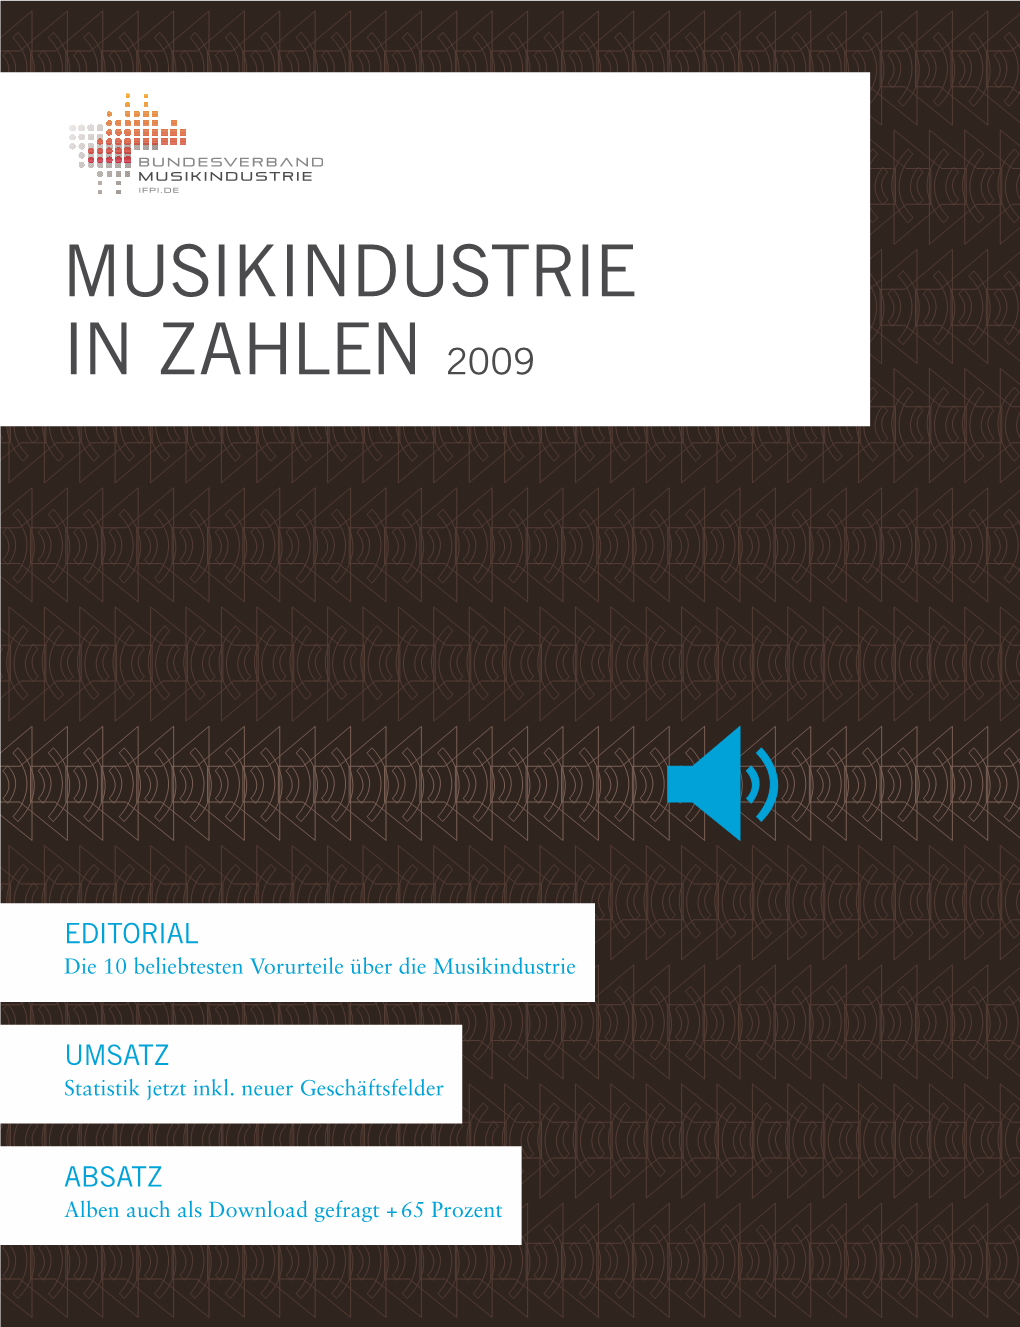 Musikindustrie in Zahlen 2009 2009 Zahlen in Musikindustrie